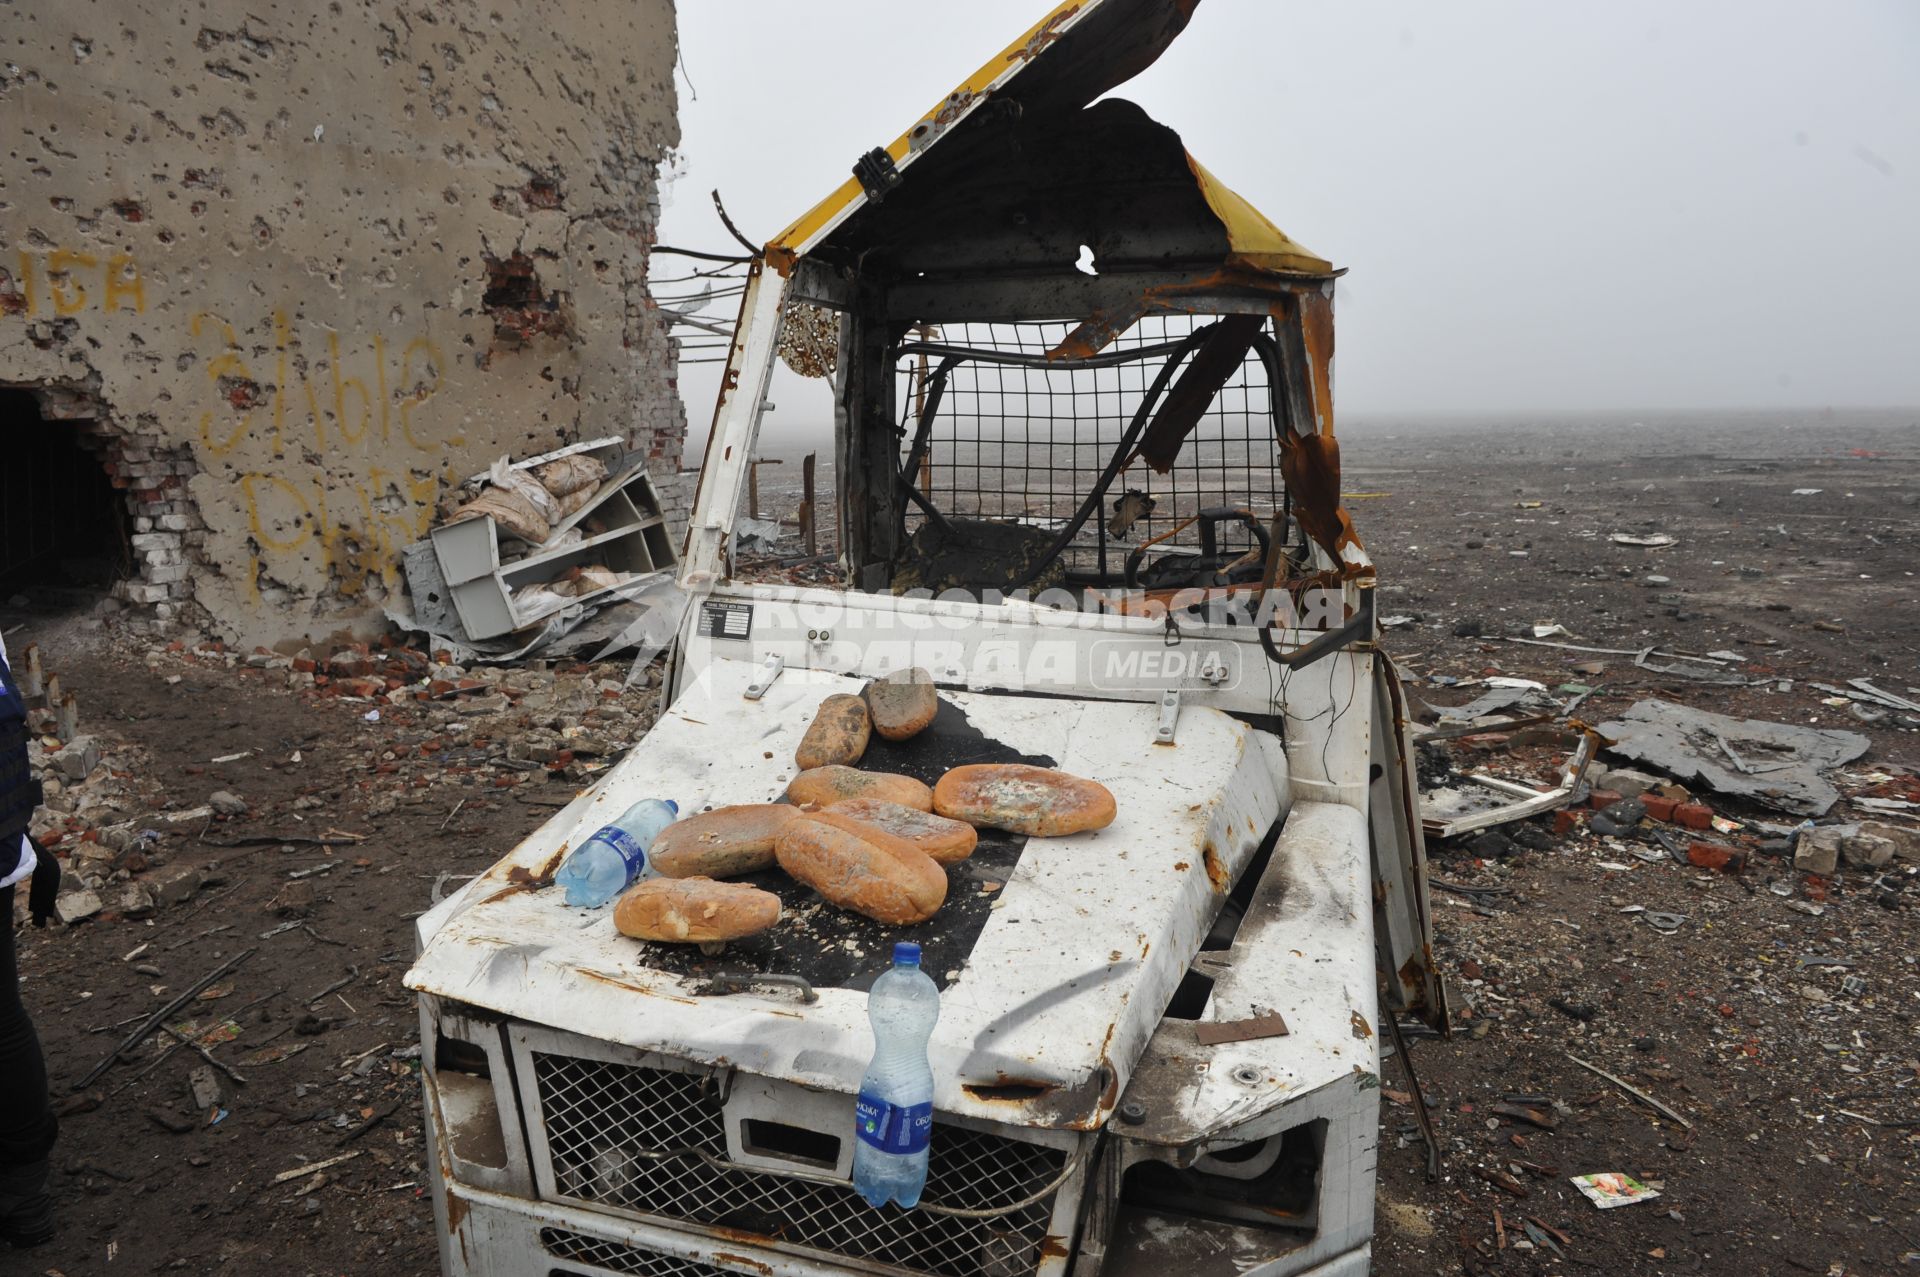 Донецк. Аэропорт. На снимке: старые батоны хлеба на взорванной машине.